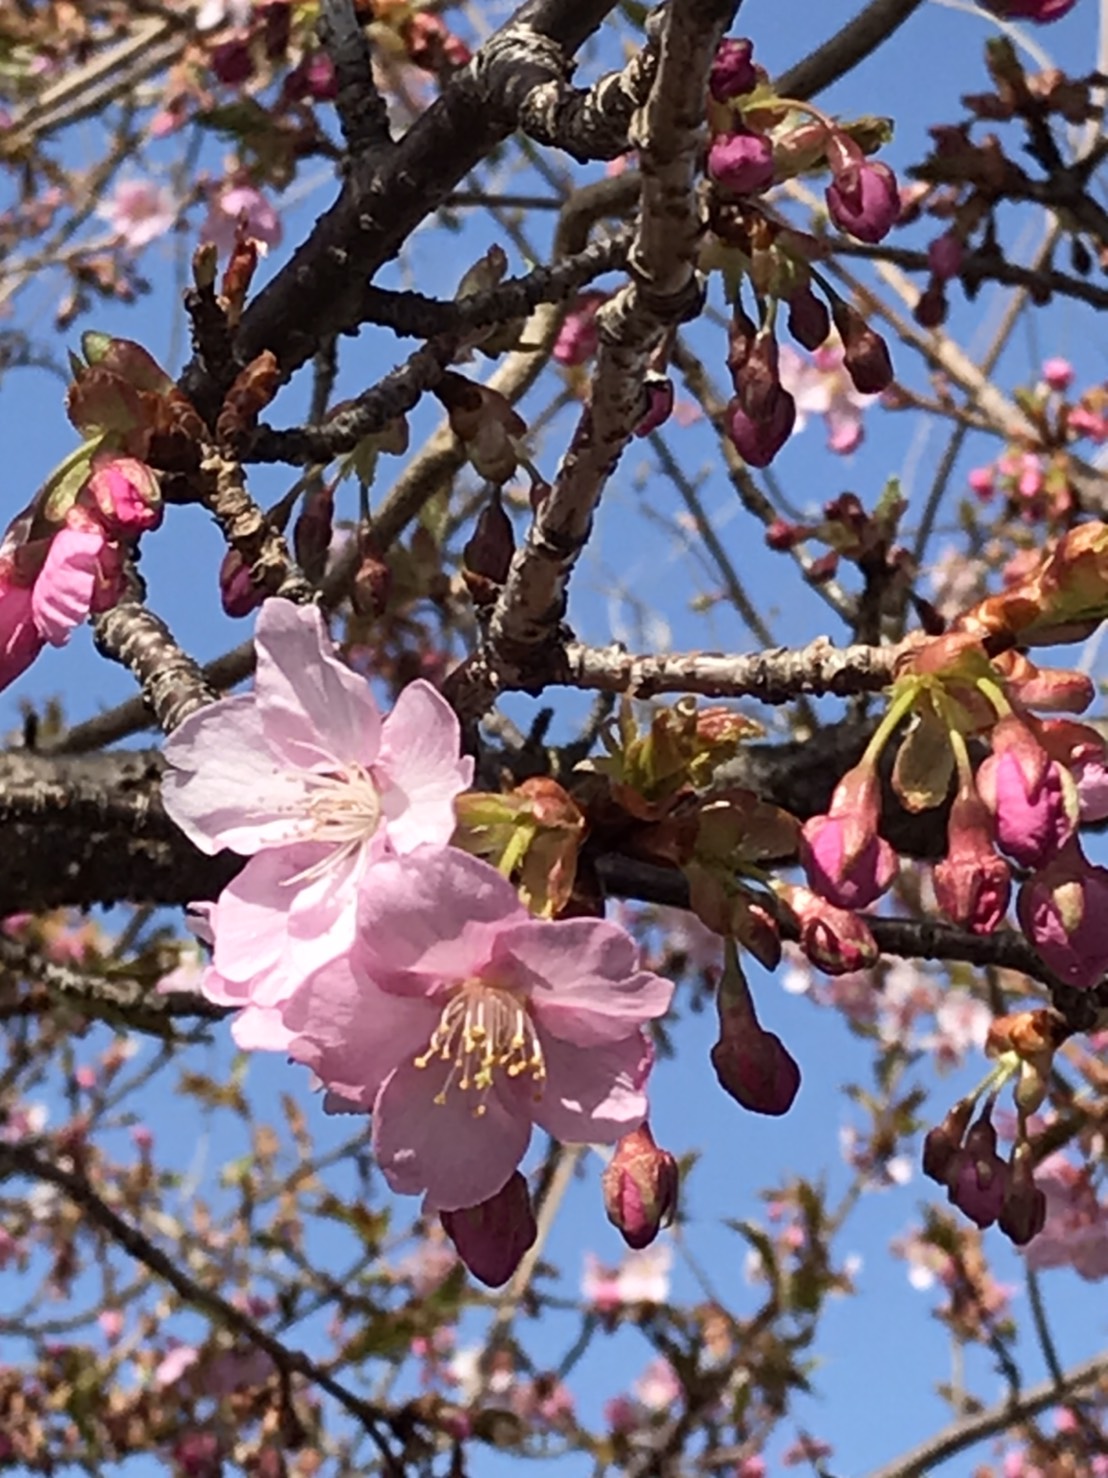 穴山駅線路沿いの桜が開花